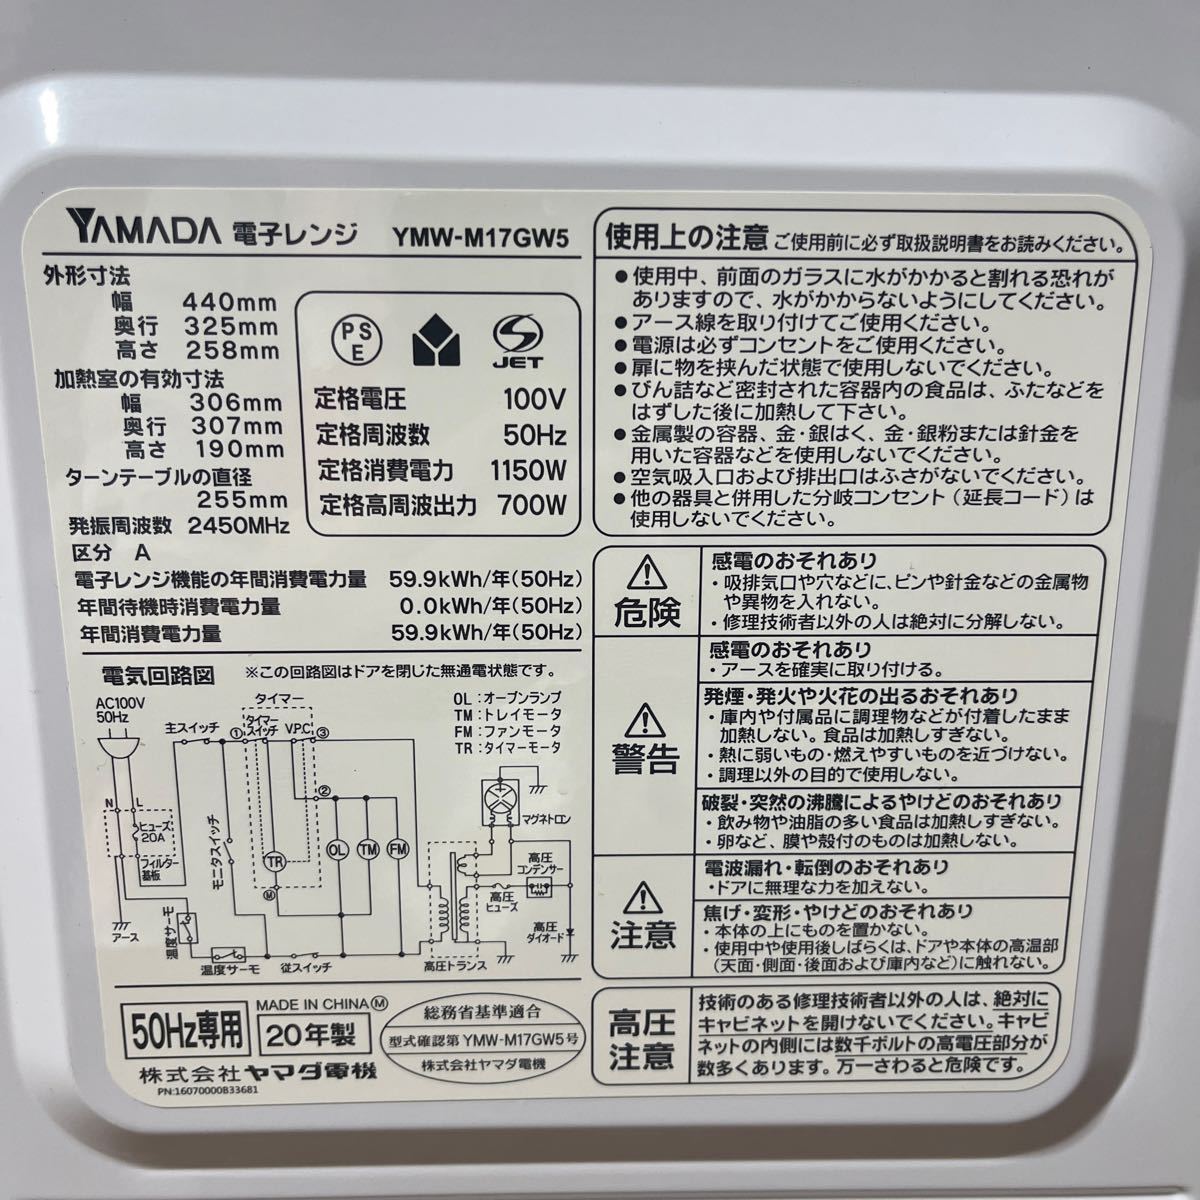 ヤマダ 電子レンジ YMW-M17GW5 ホワイト 50Hz専用 2020年製 YAMADA SELECT キッチン レンジ 家電製品 (②_画像6